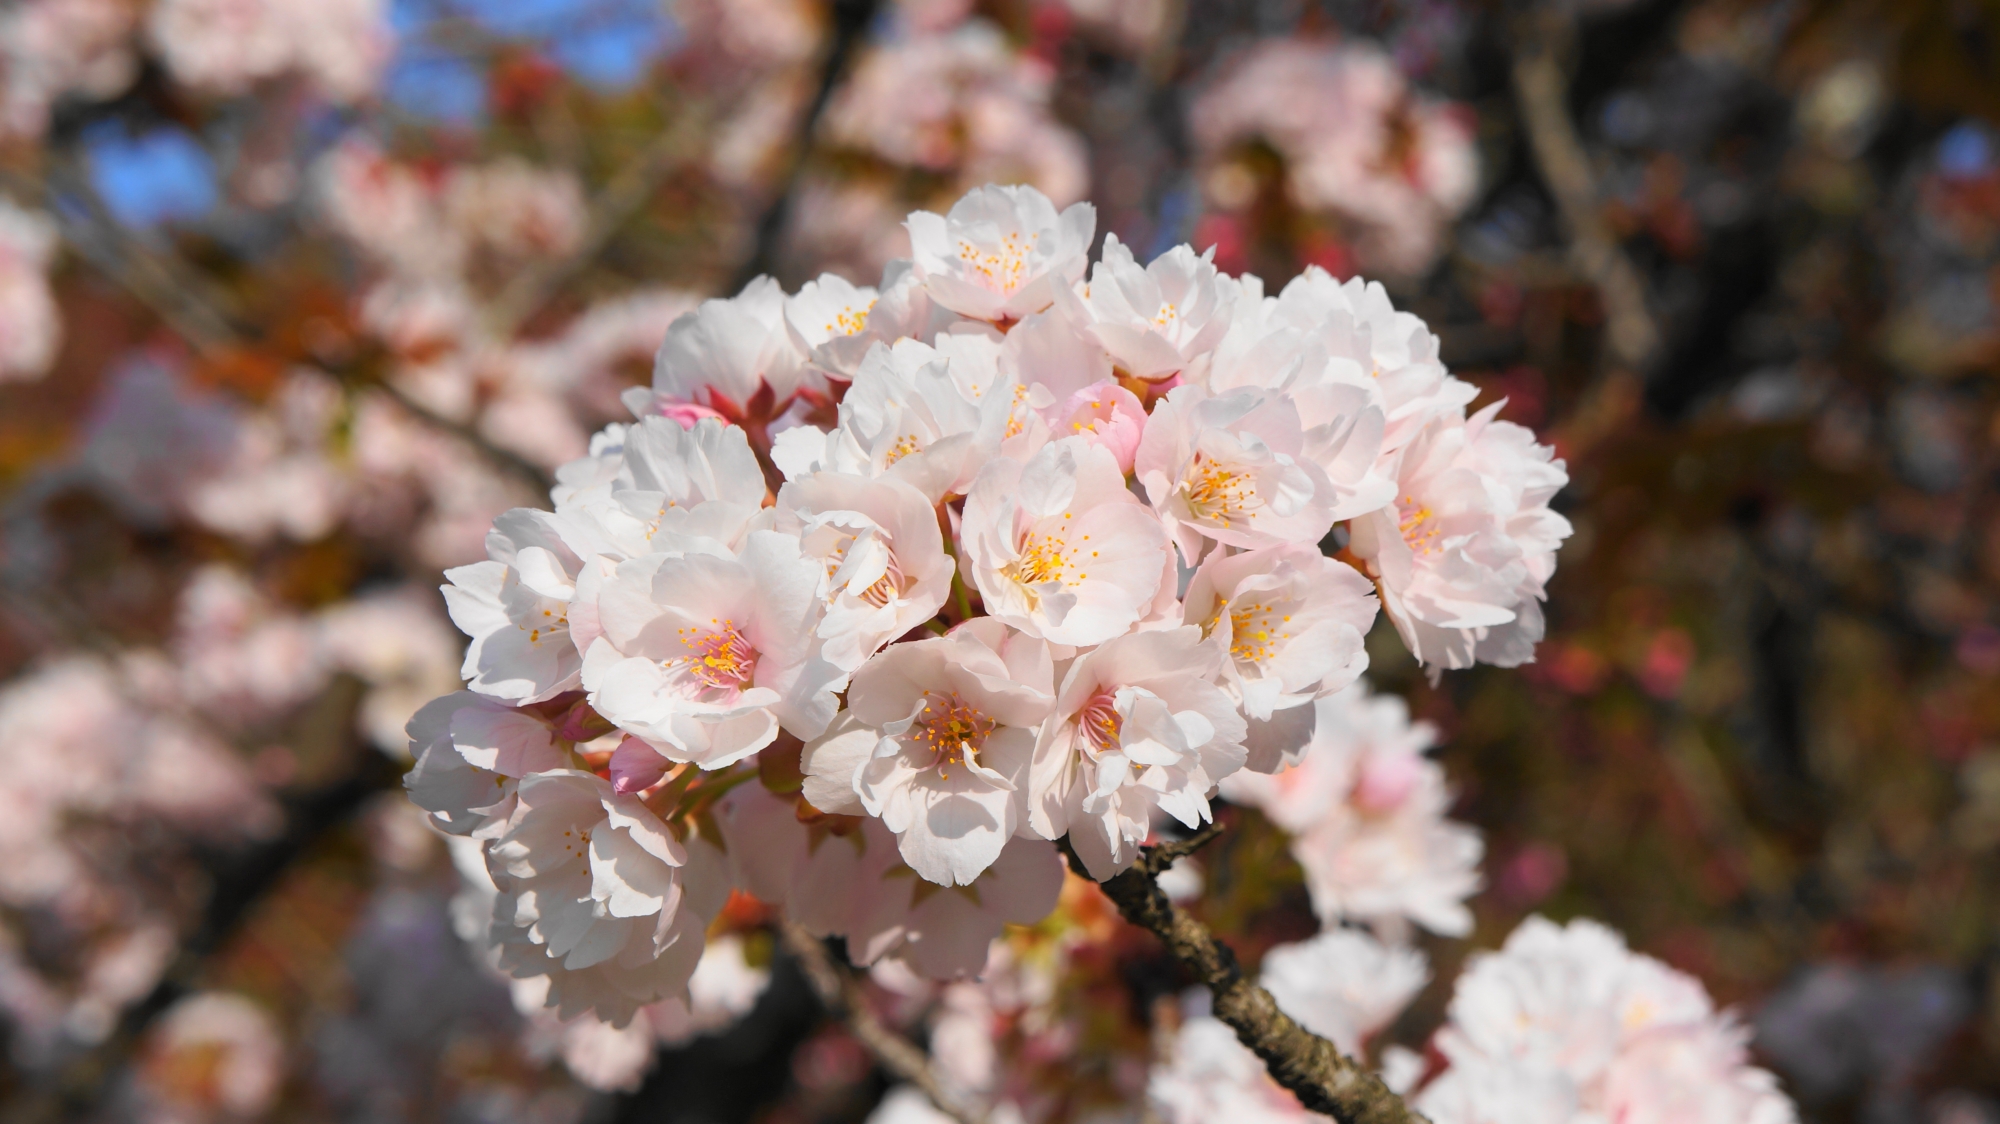 薄いピンクが入った白い綺麗な桜